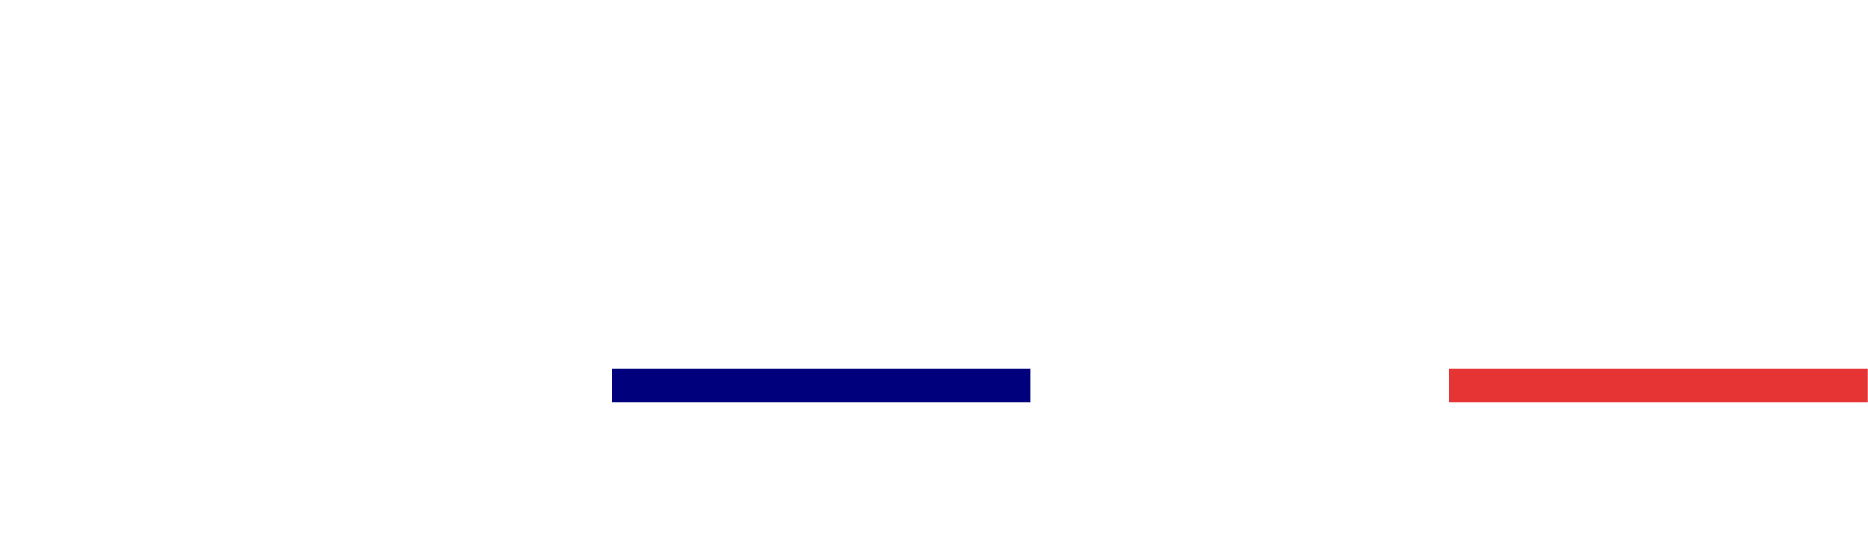 France Offshore Renewables